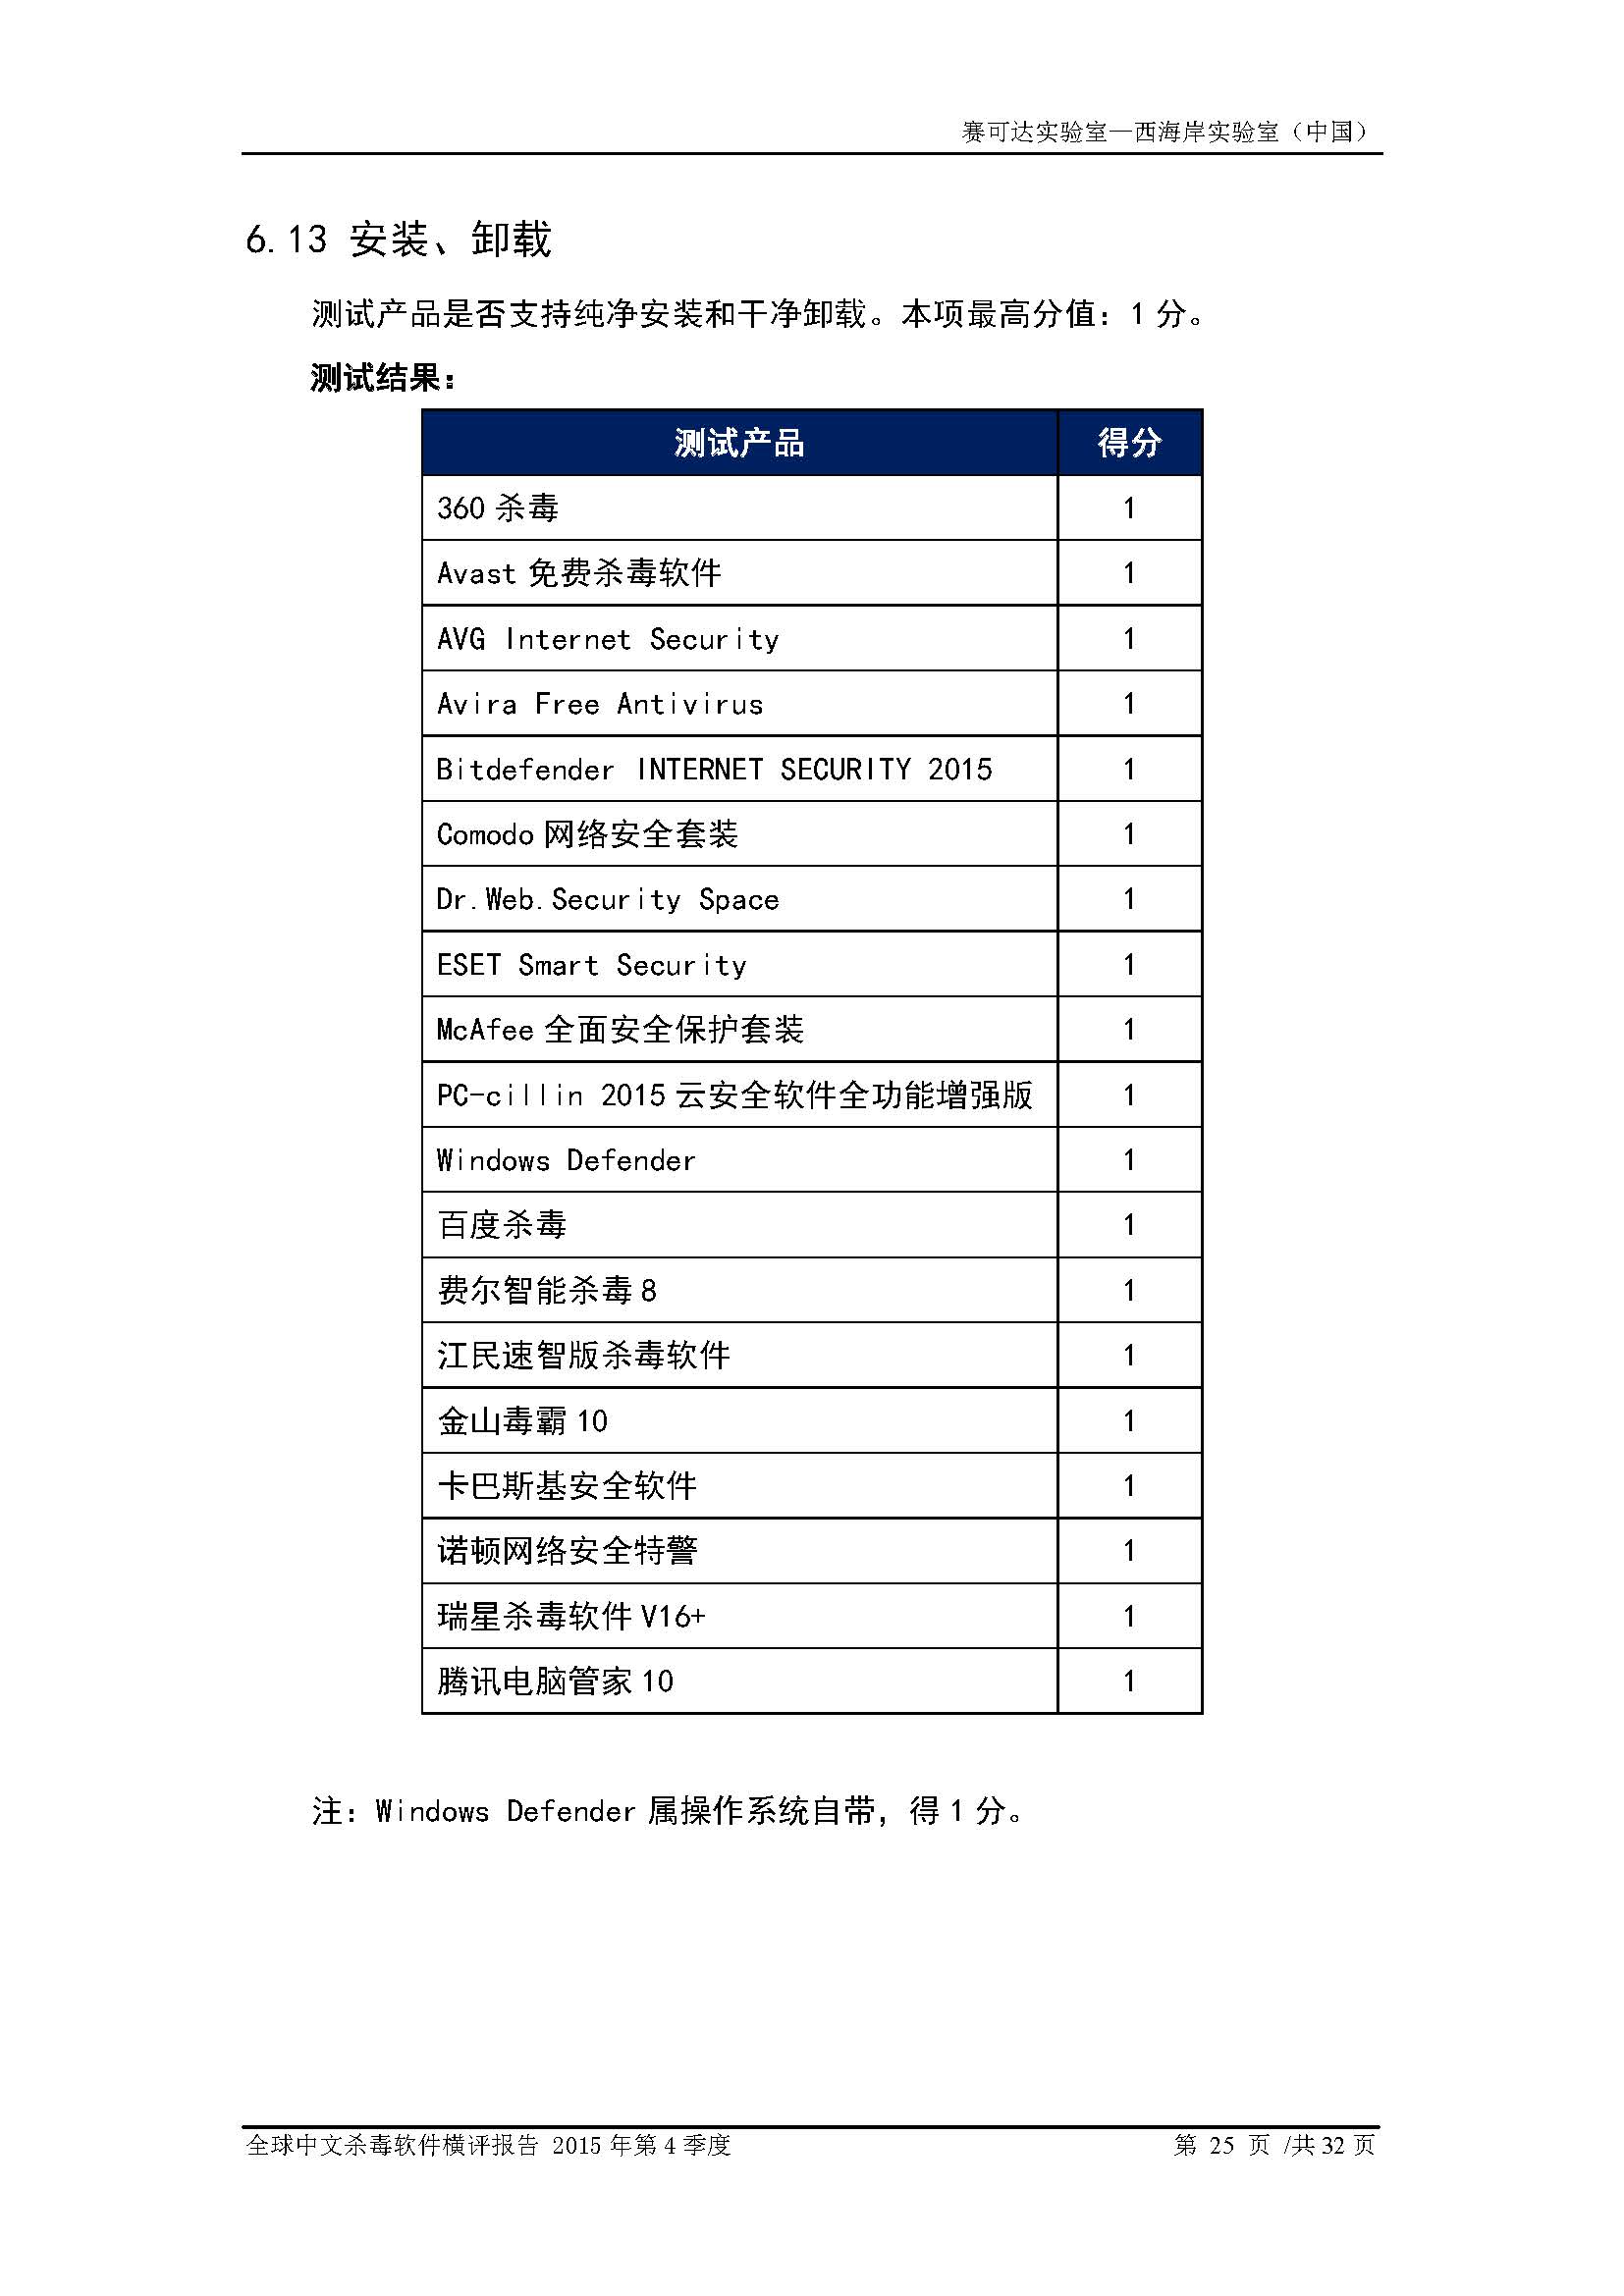 中文PC杀毒软件横评测试报告- Windows 8.1【中文版】.pdf (_Page_27.jpg